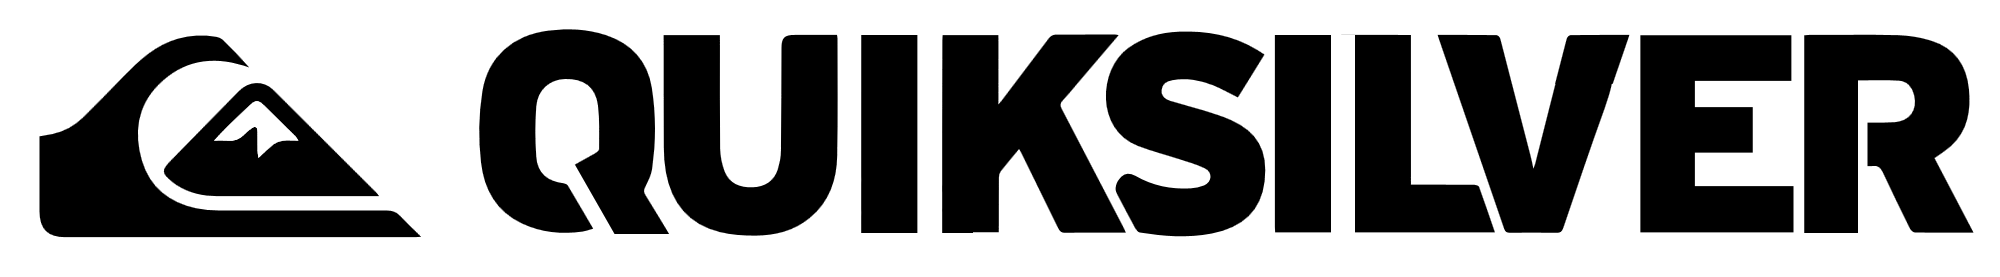 Quiksilver logo, logotype